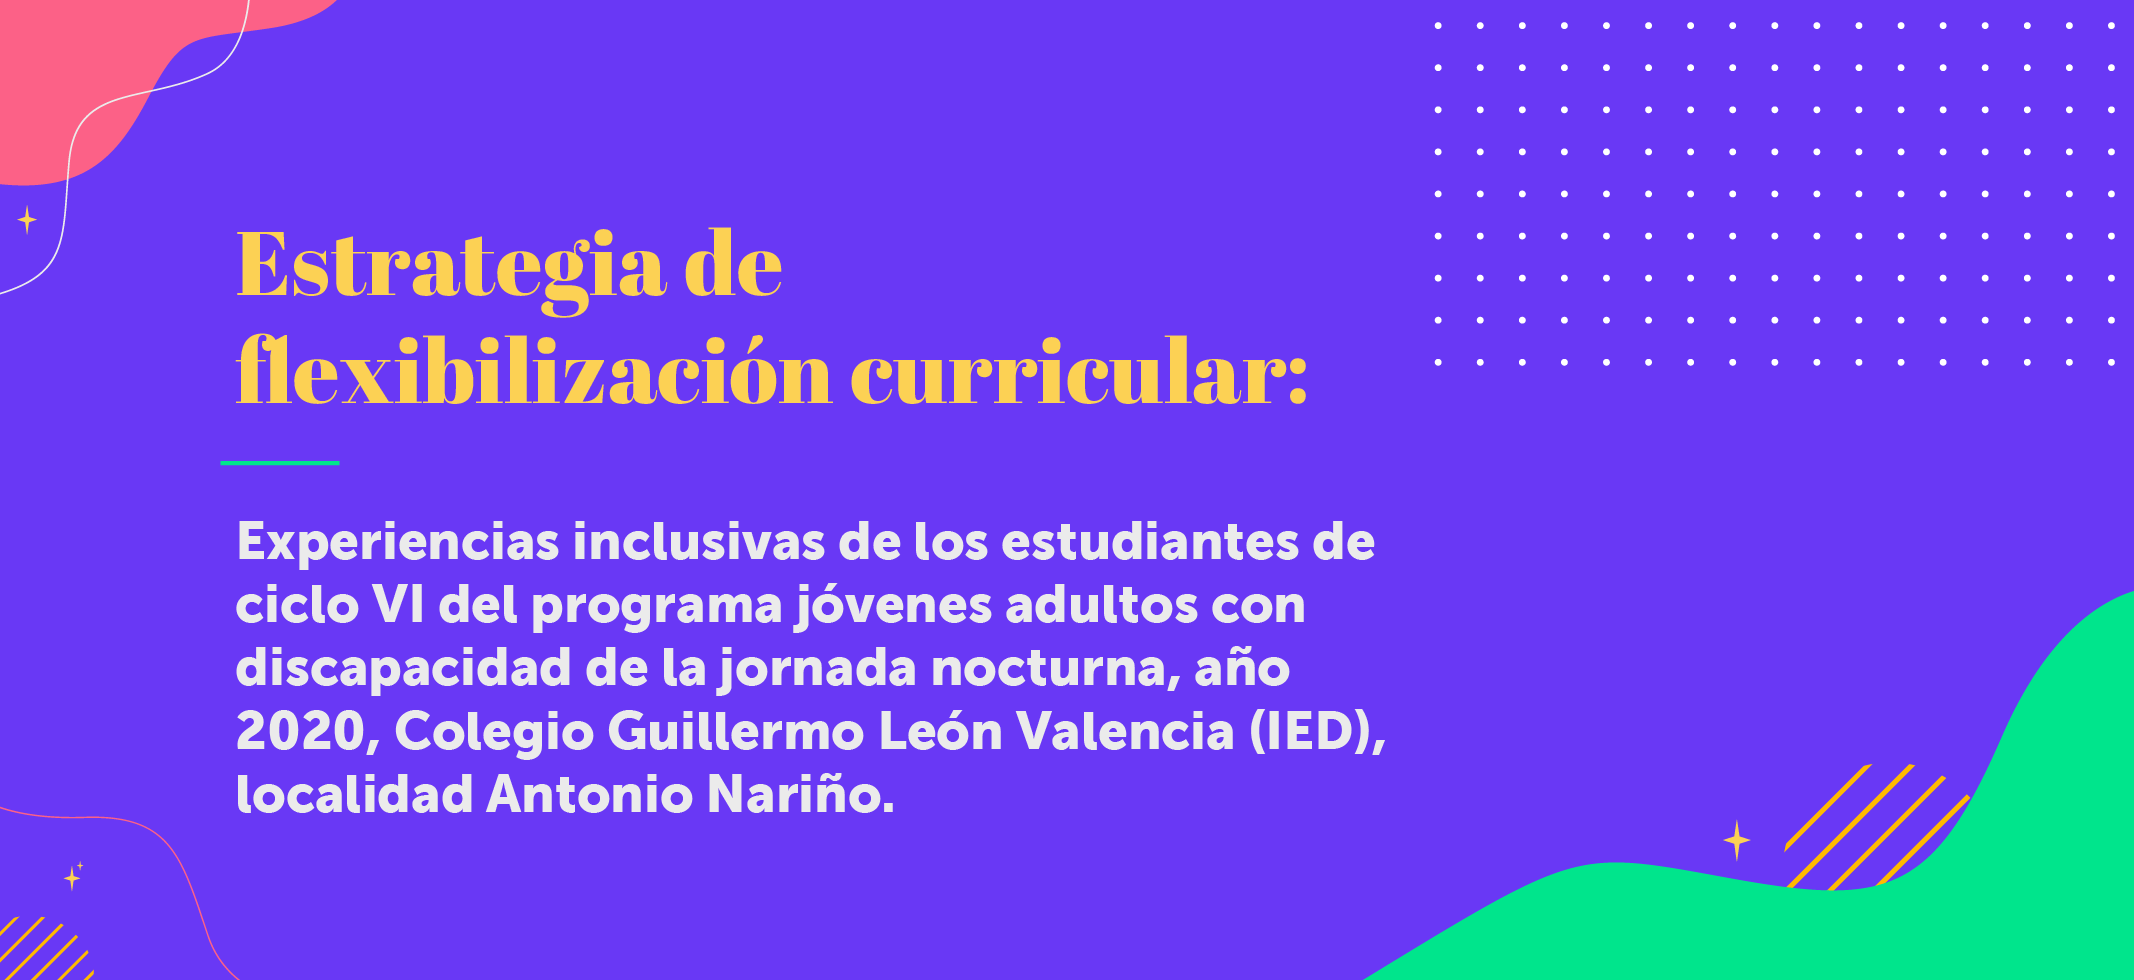 Experiencias inclusivas Colegio Guillermo León Valencia (IED)